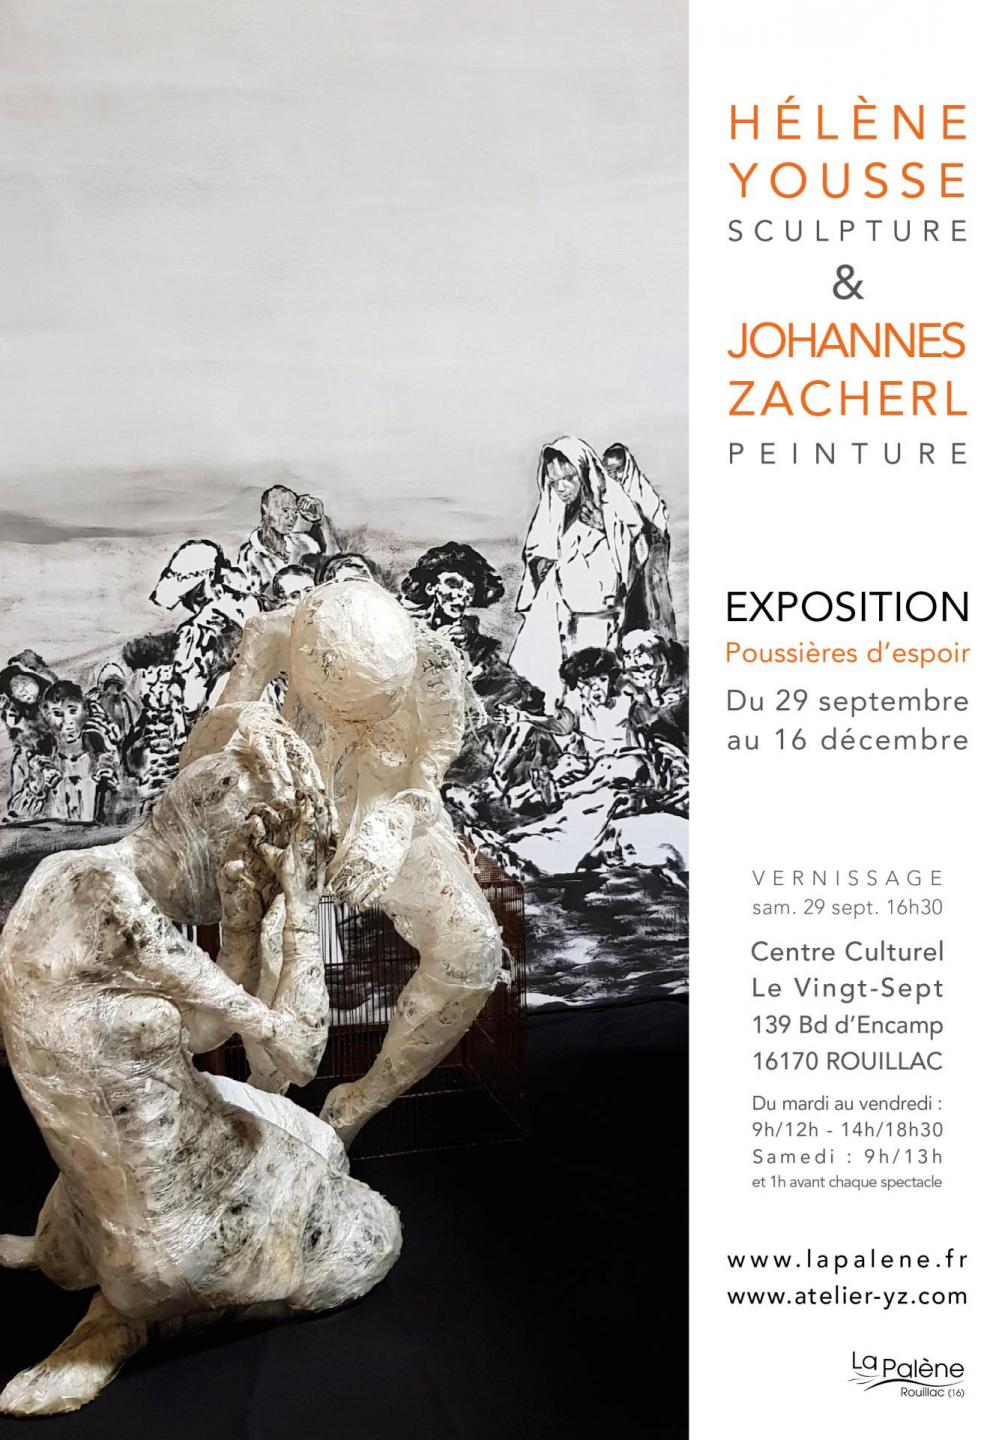 Exposition Hélène Yousse & Johannes Zacherl